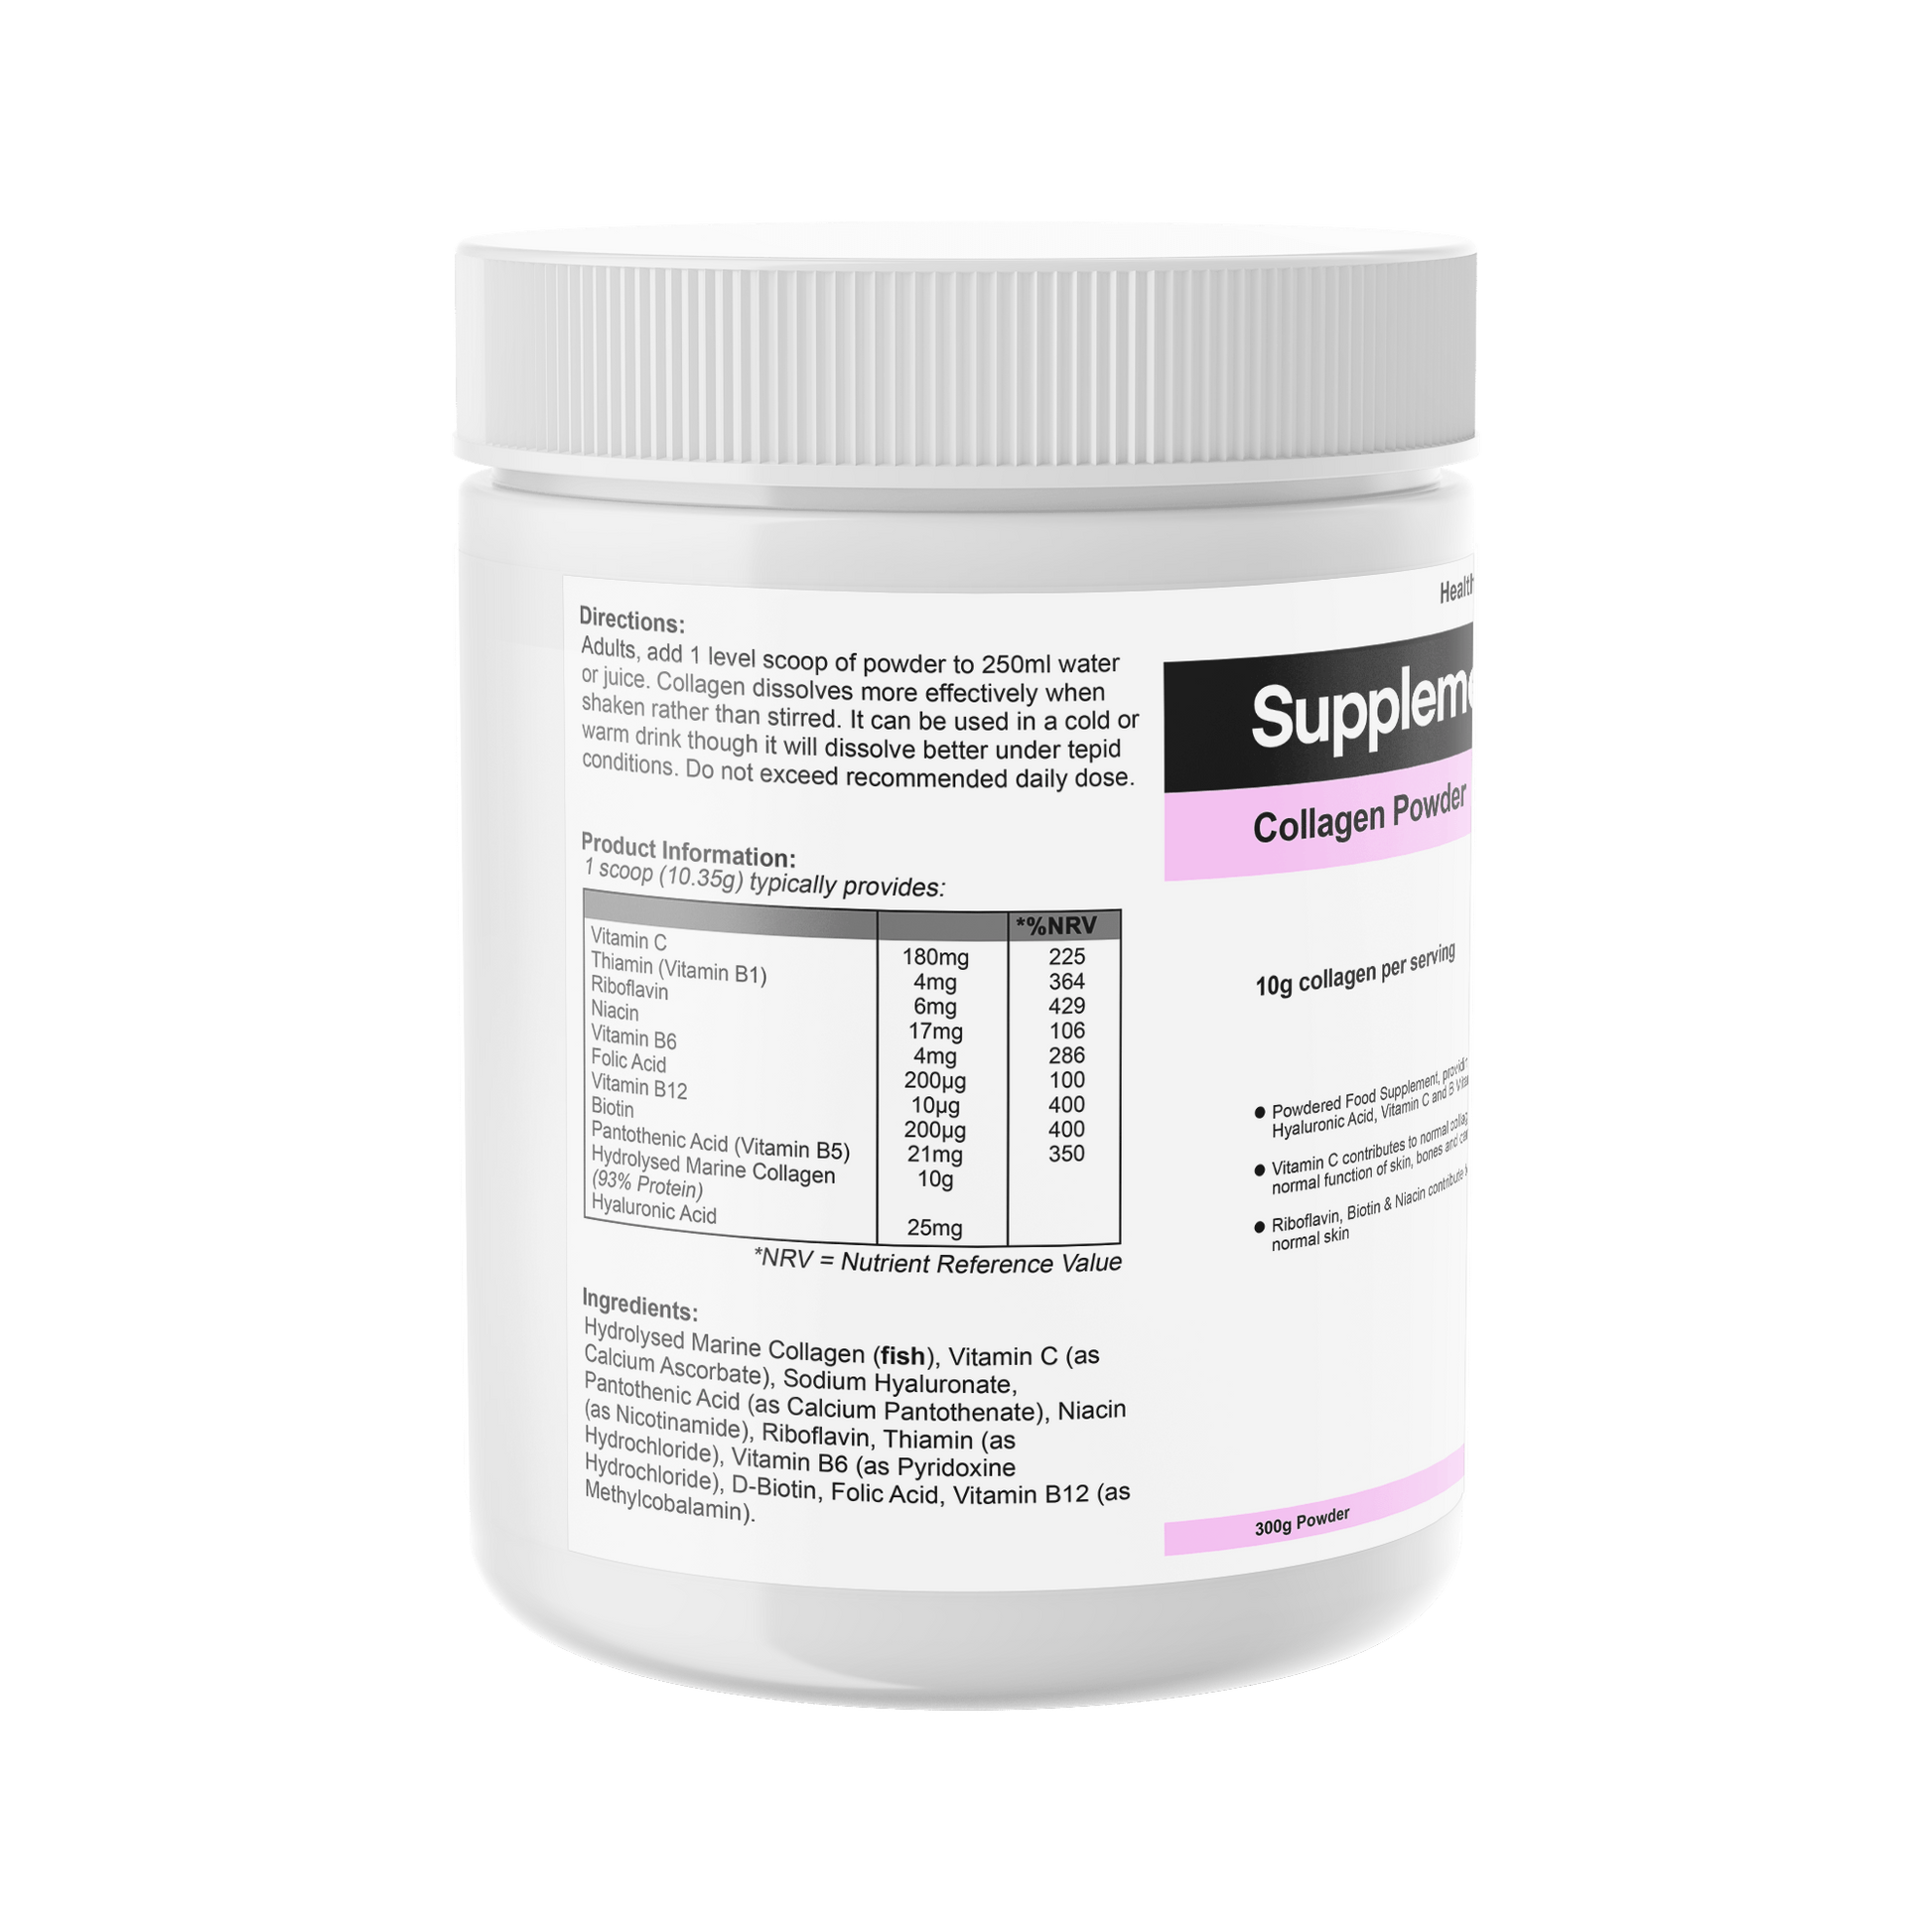 Collagen Powder - Supplemental